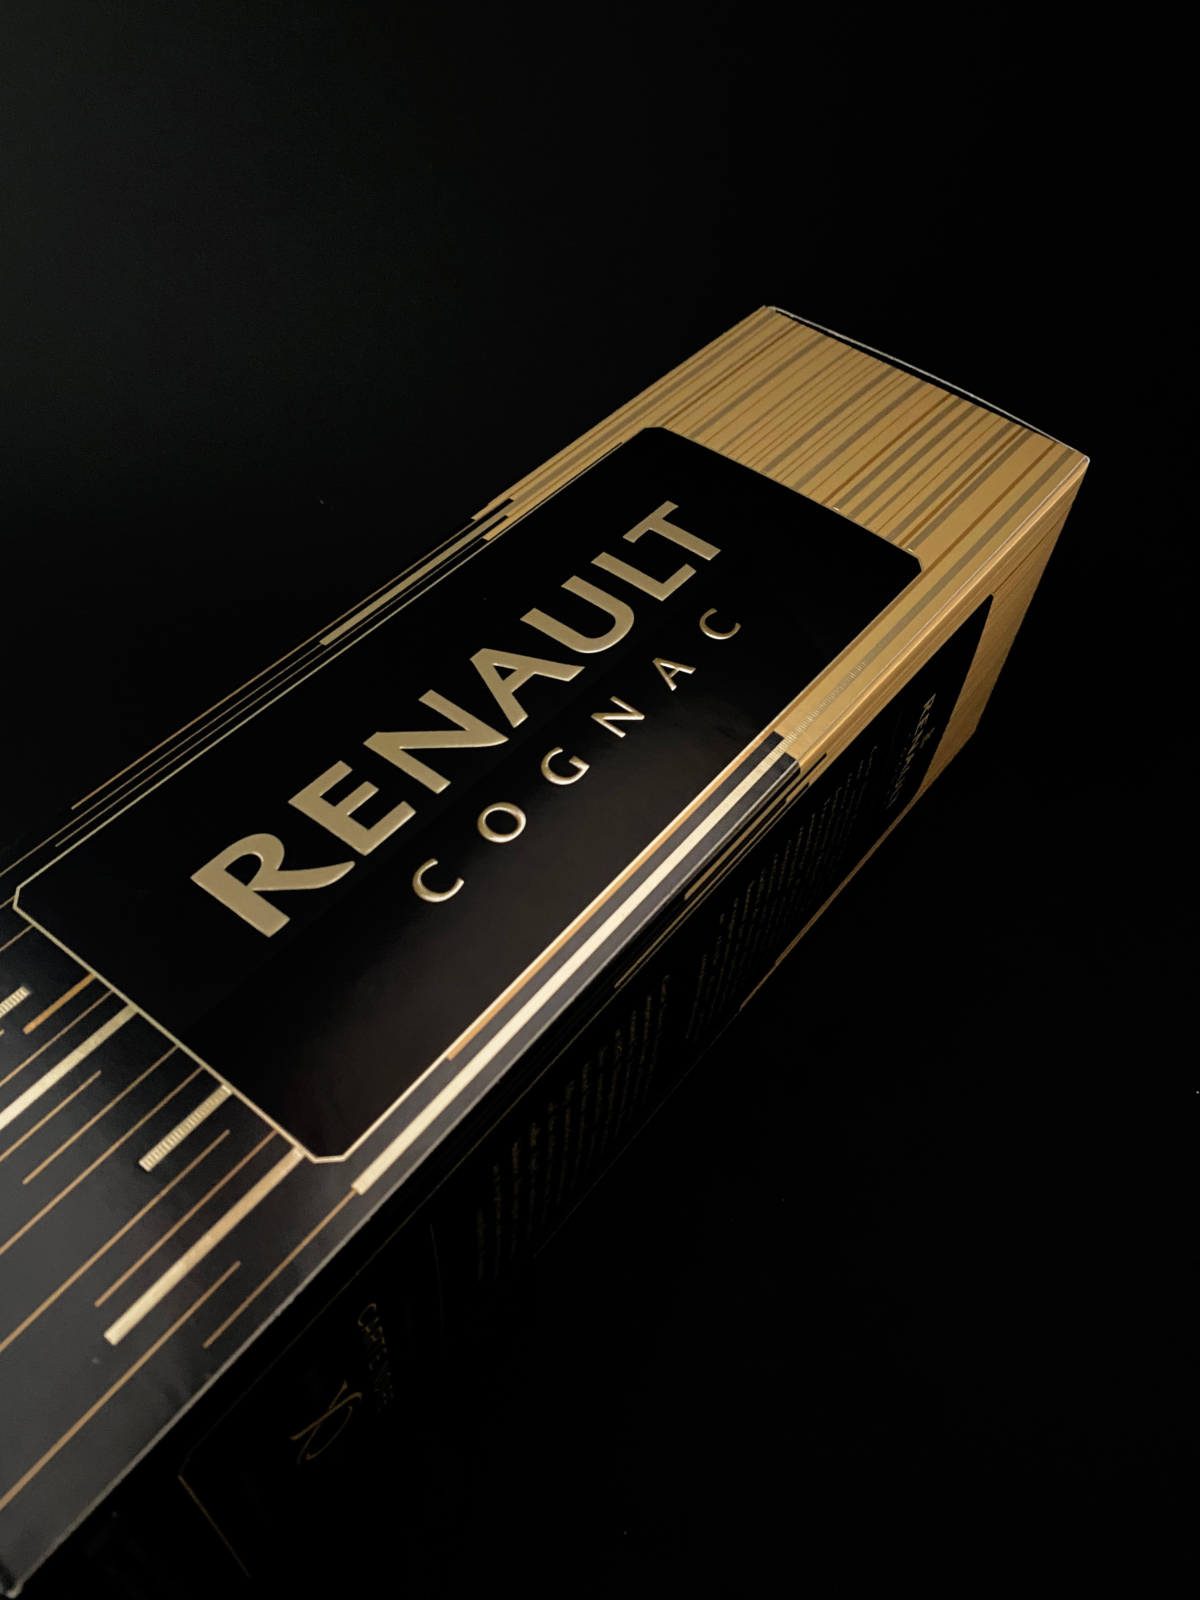 RENAULT - Un design pensé par l’agence de design de Paris Partisan du Sens.